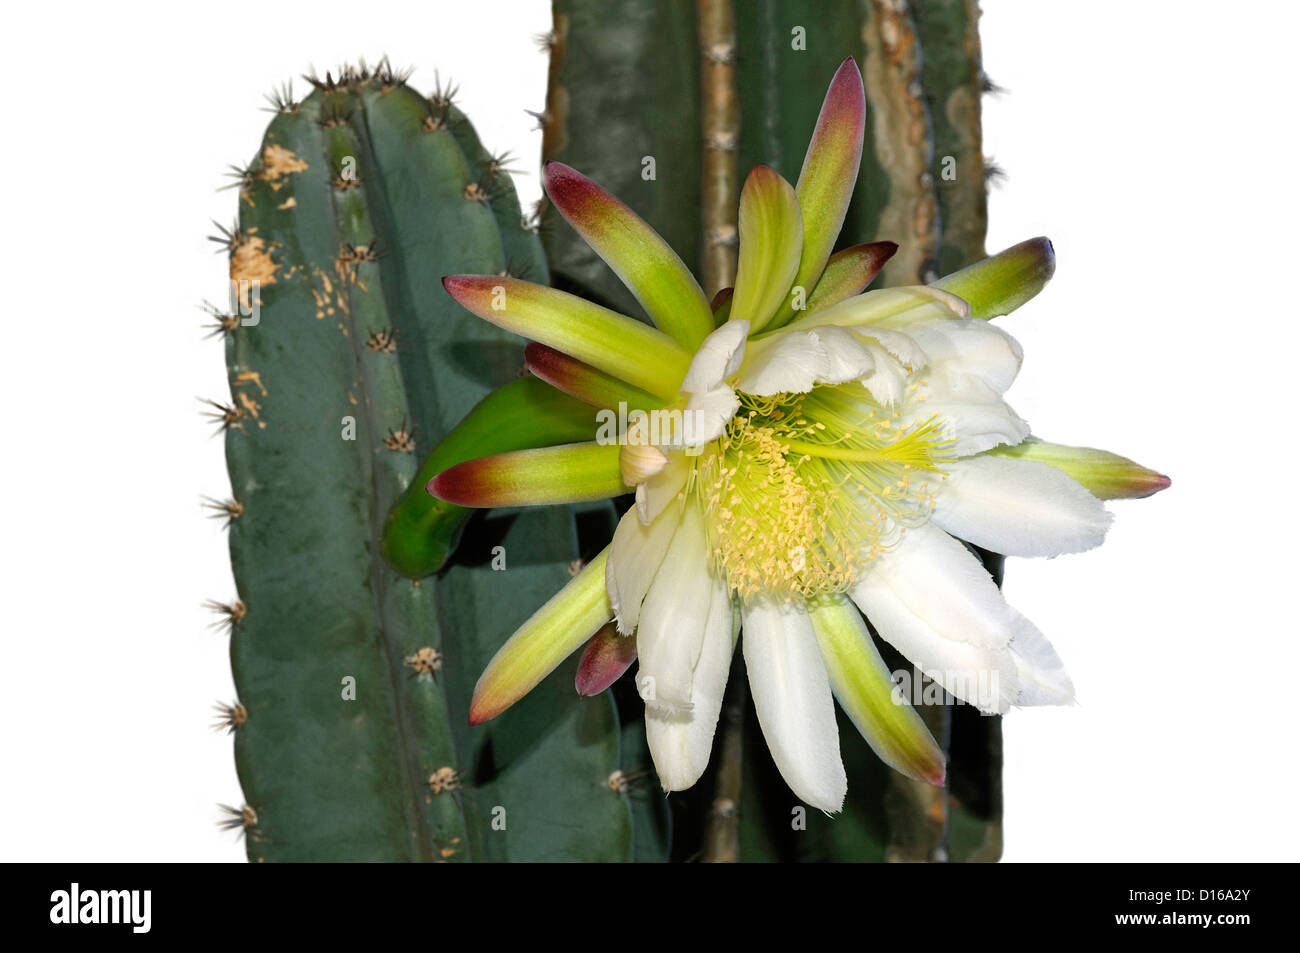 Flower of Peruvian Apple Cactus (Cereus peruviansis) Stock Photo